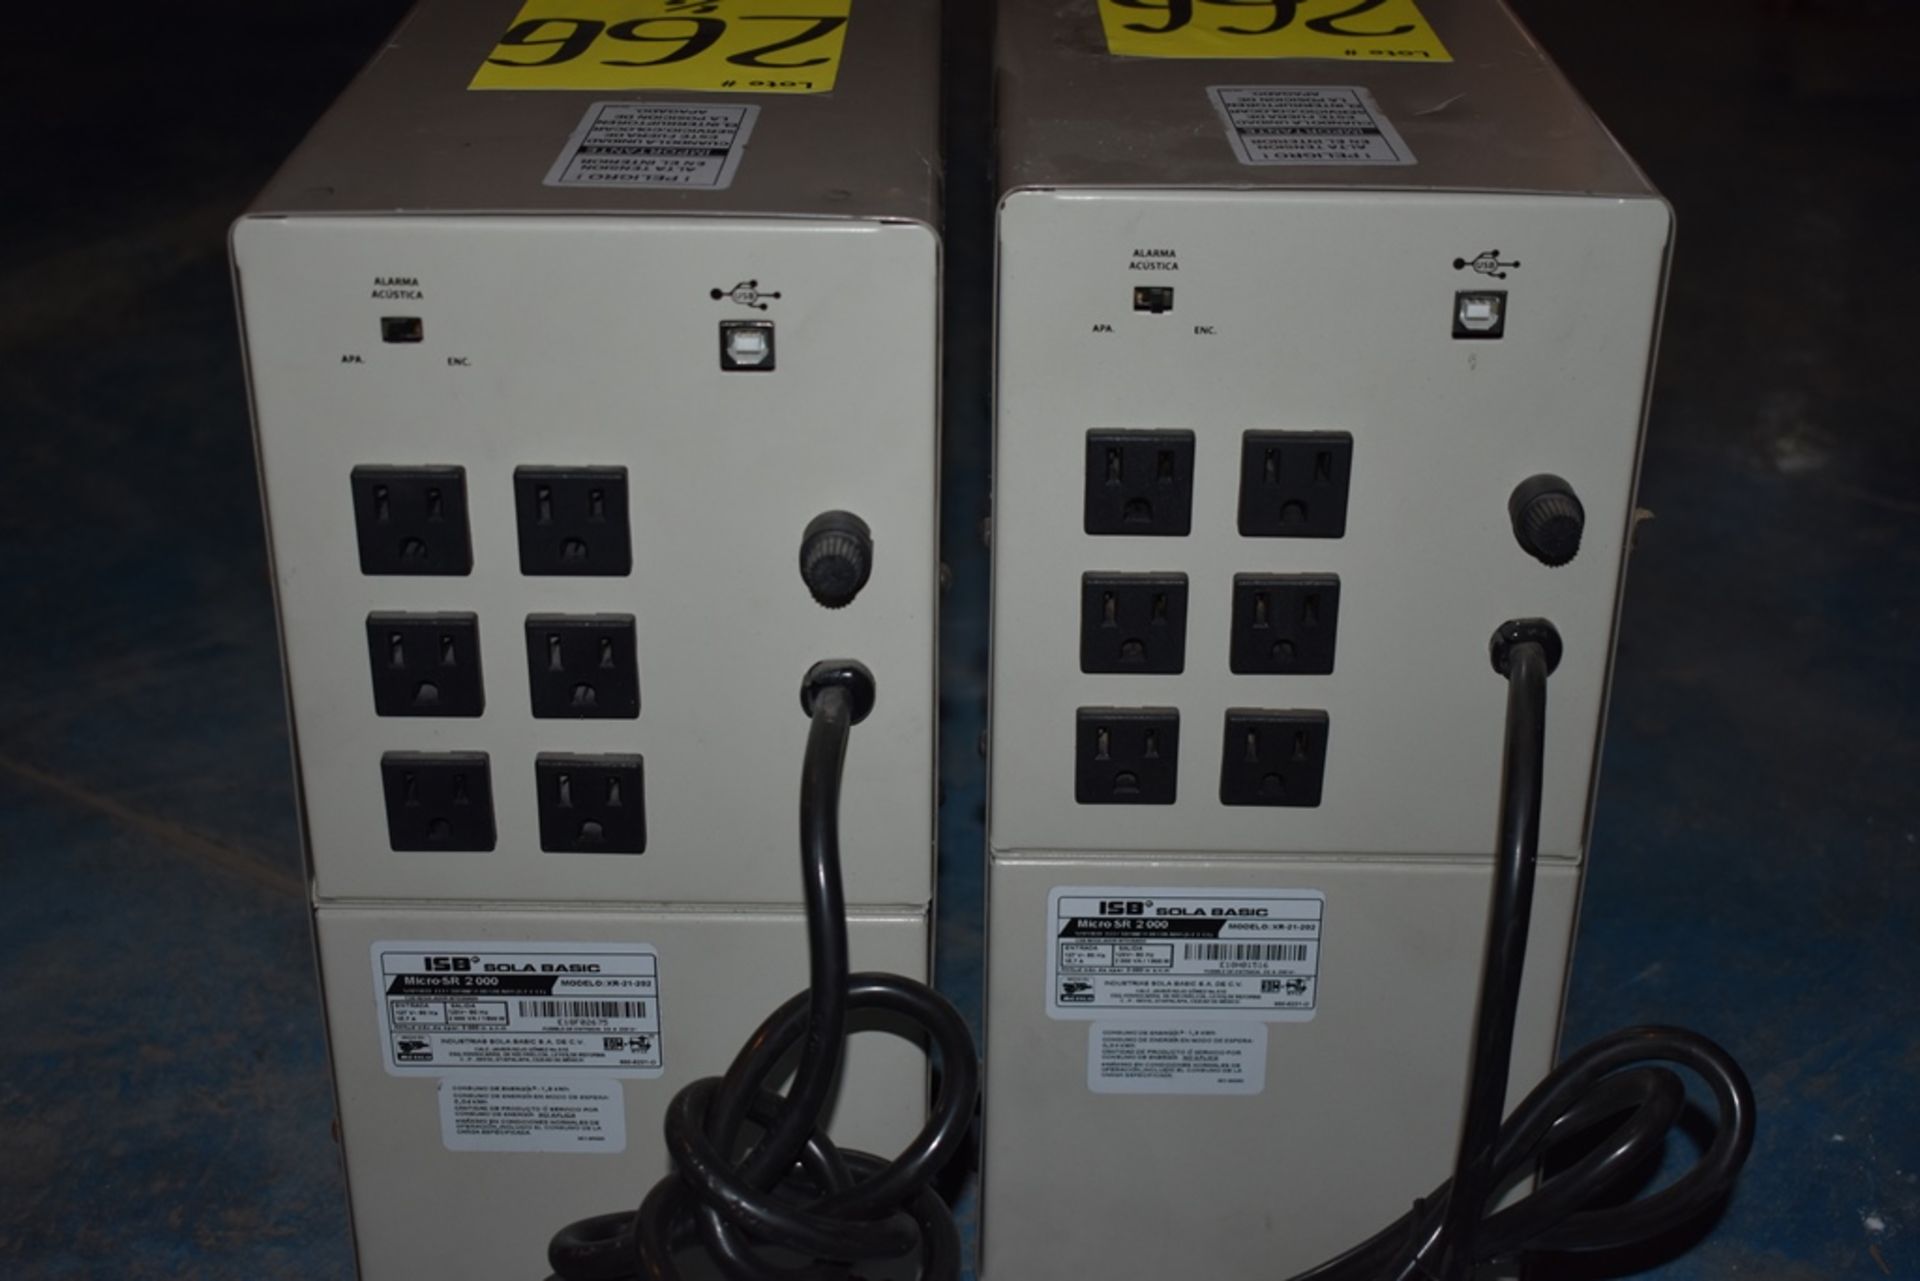 Dos reguladores de voltaje marca ISB Solabasic, modelo: XR-21-202, Series: E18F02675, E18H01516 - Image 6 of 17